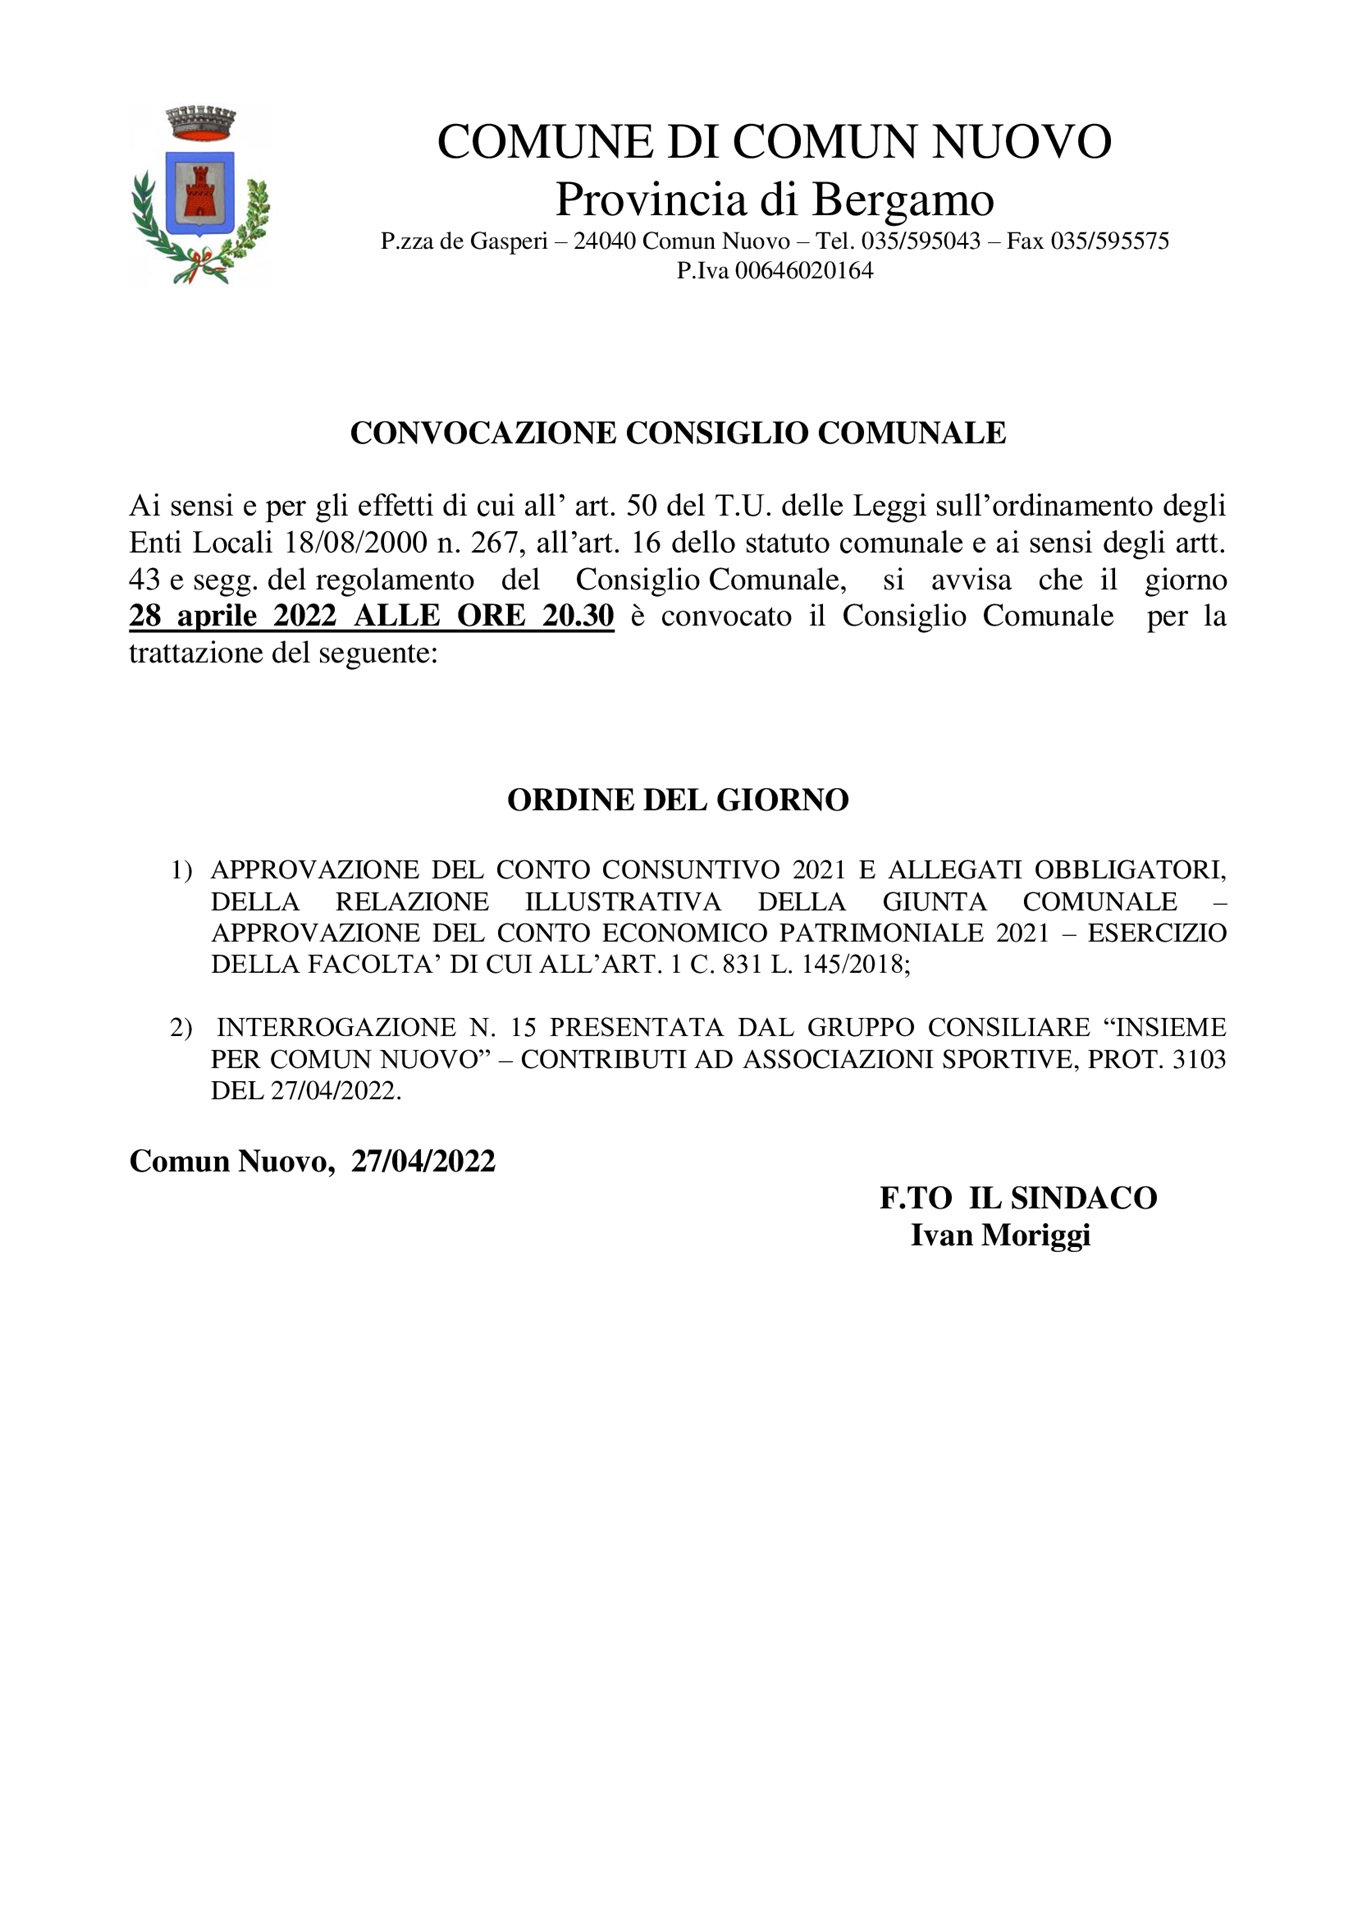 CONVOCAZIONE CONSIGLIO COMUNALE DEL 28.04.2022